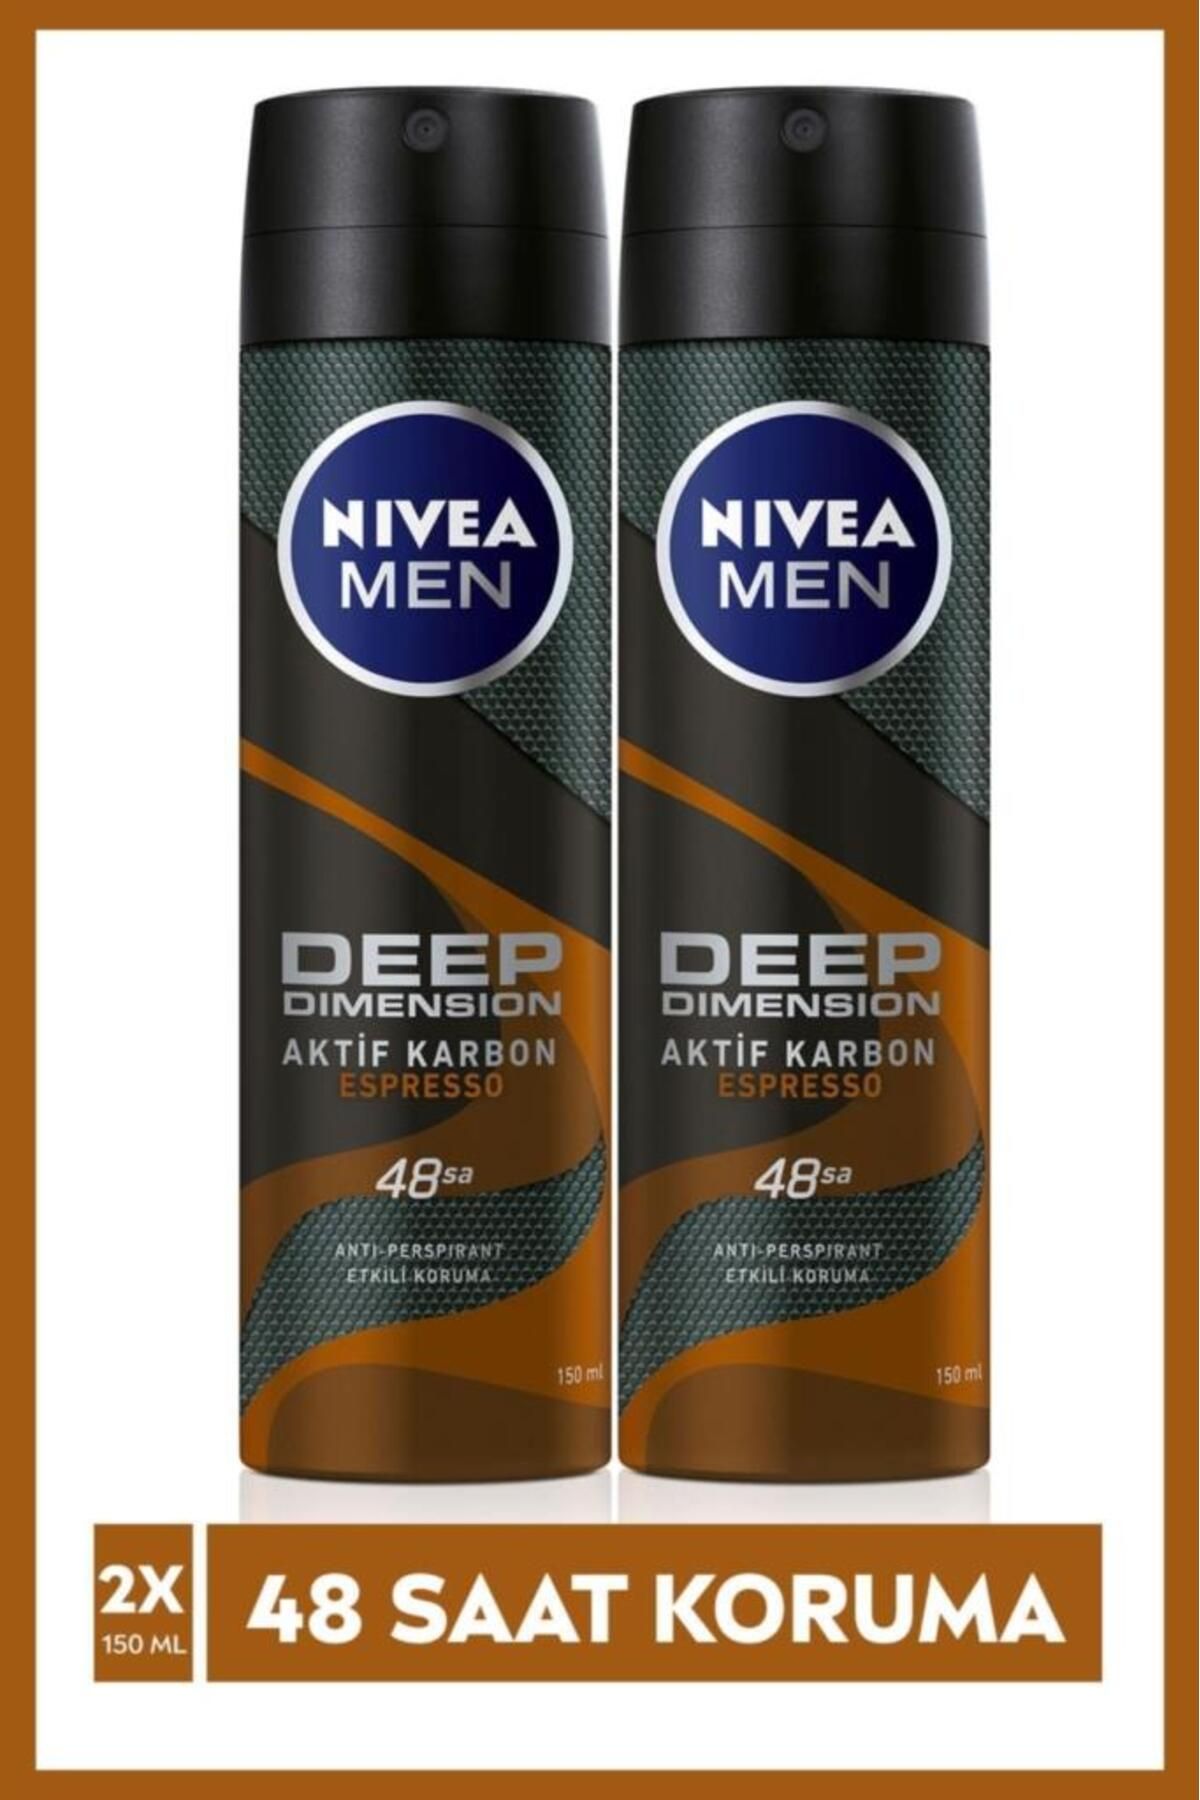 NIVEA MEN Erkek Sprey Deodorant Espresso 150 mlx2Adet,48 Saat Anti-Perspirant Etkili Koruma